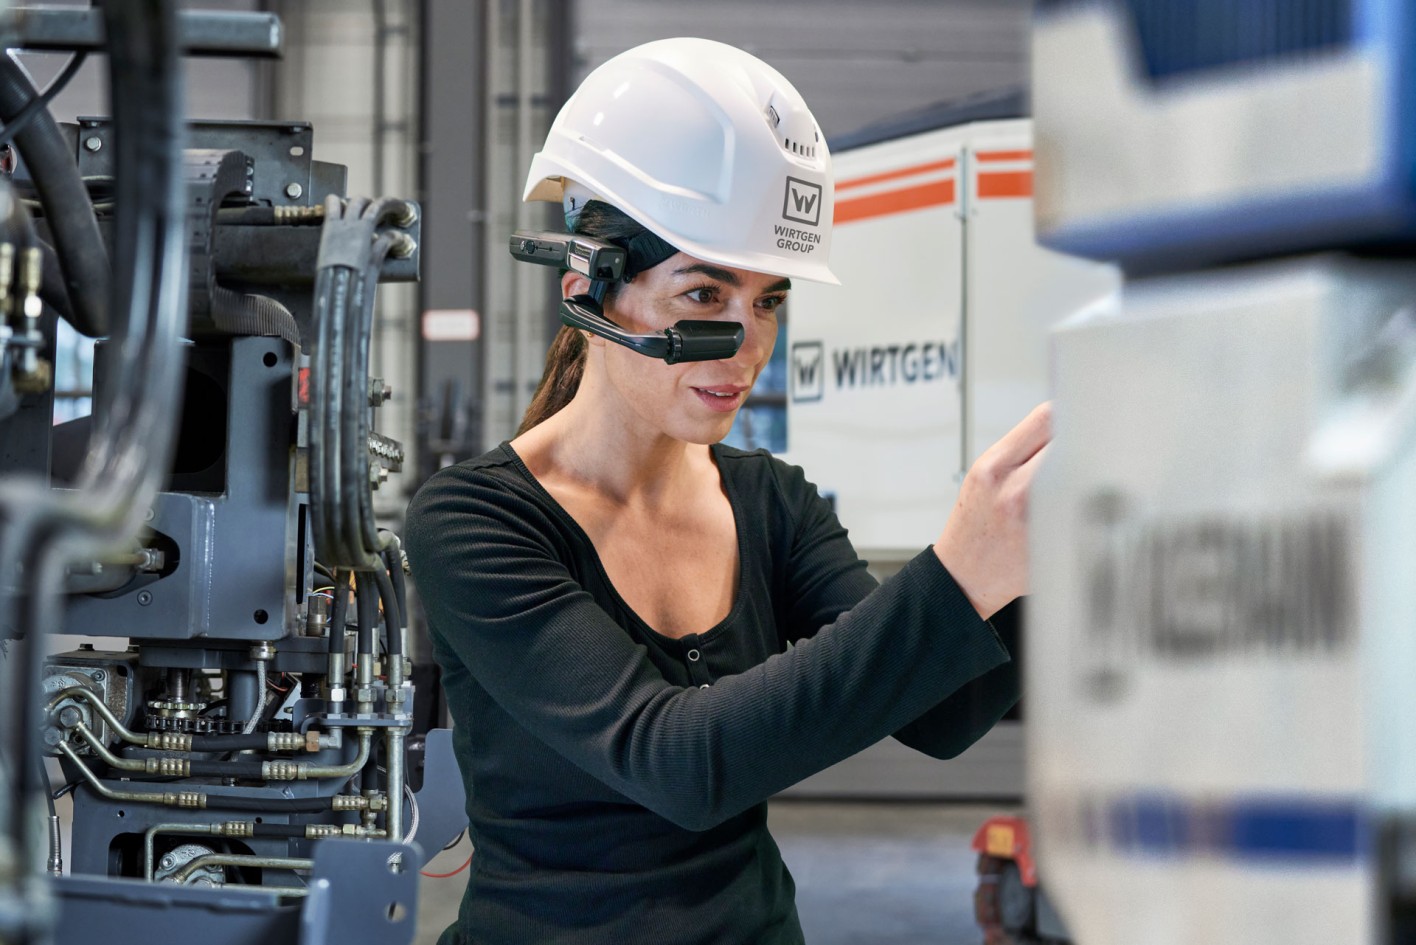 Женщина-механик использует очки Expert Assist во время работы с машиной.